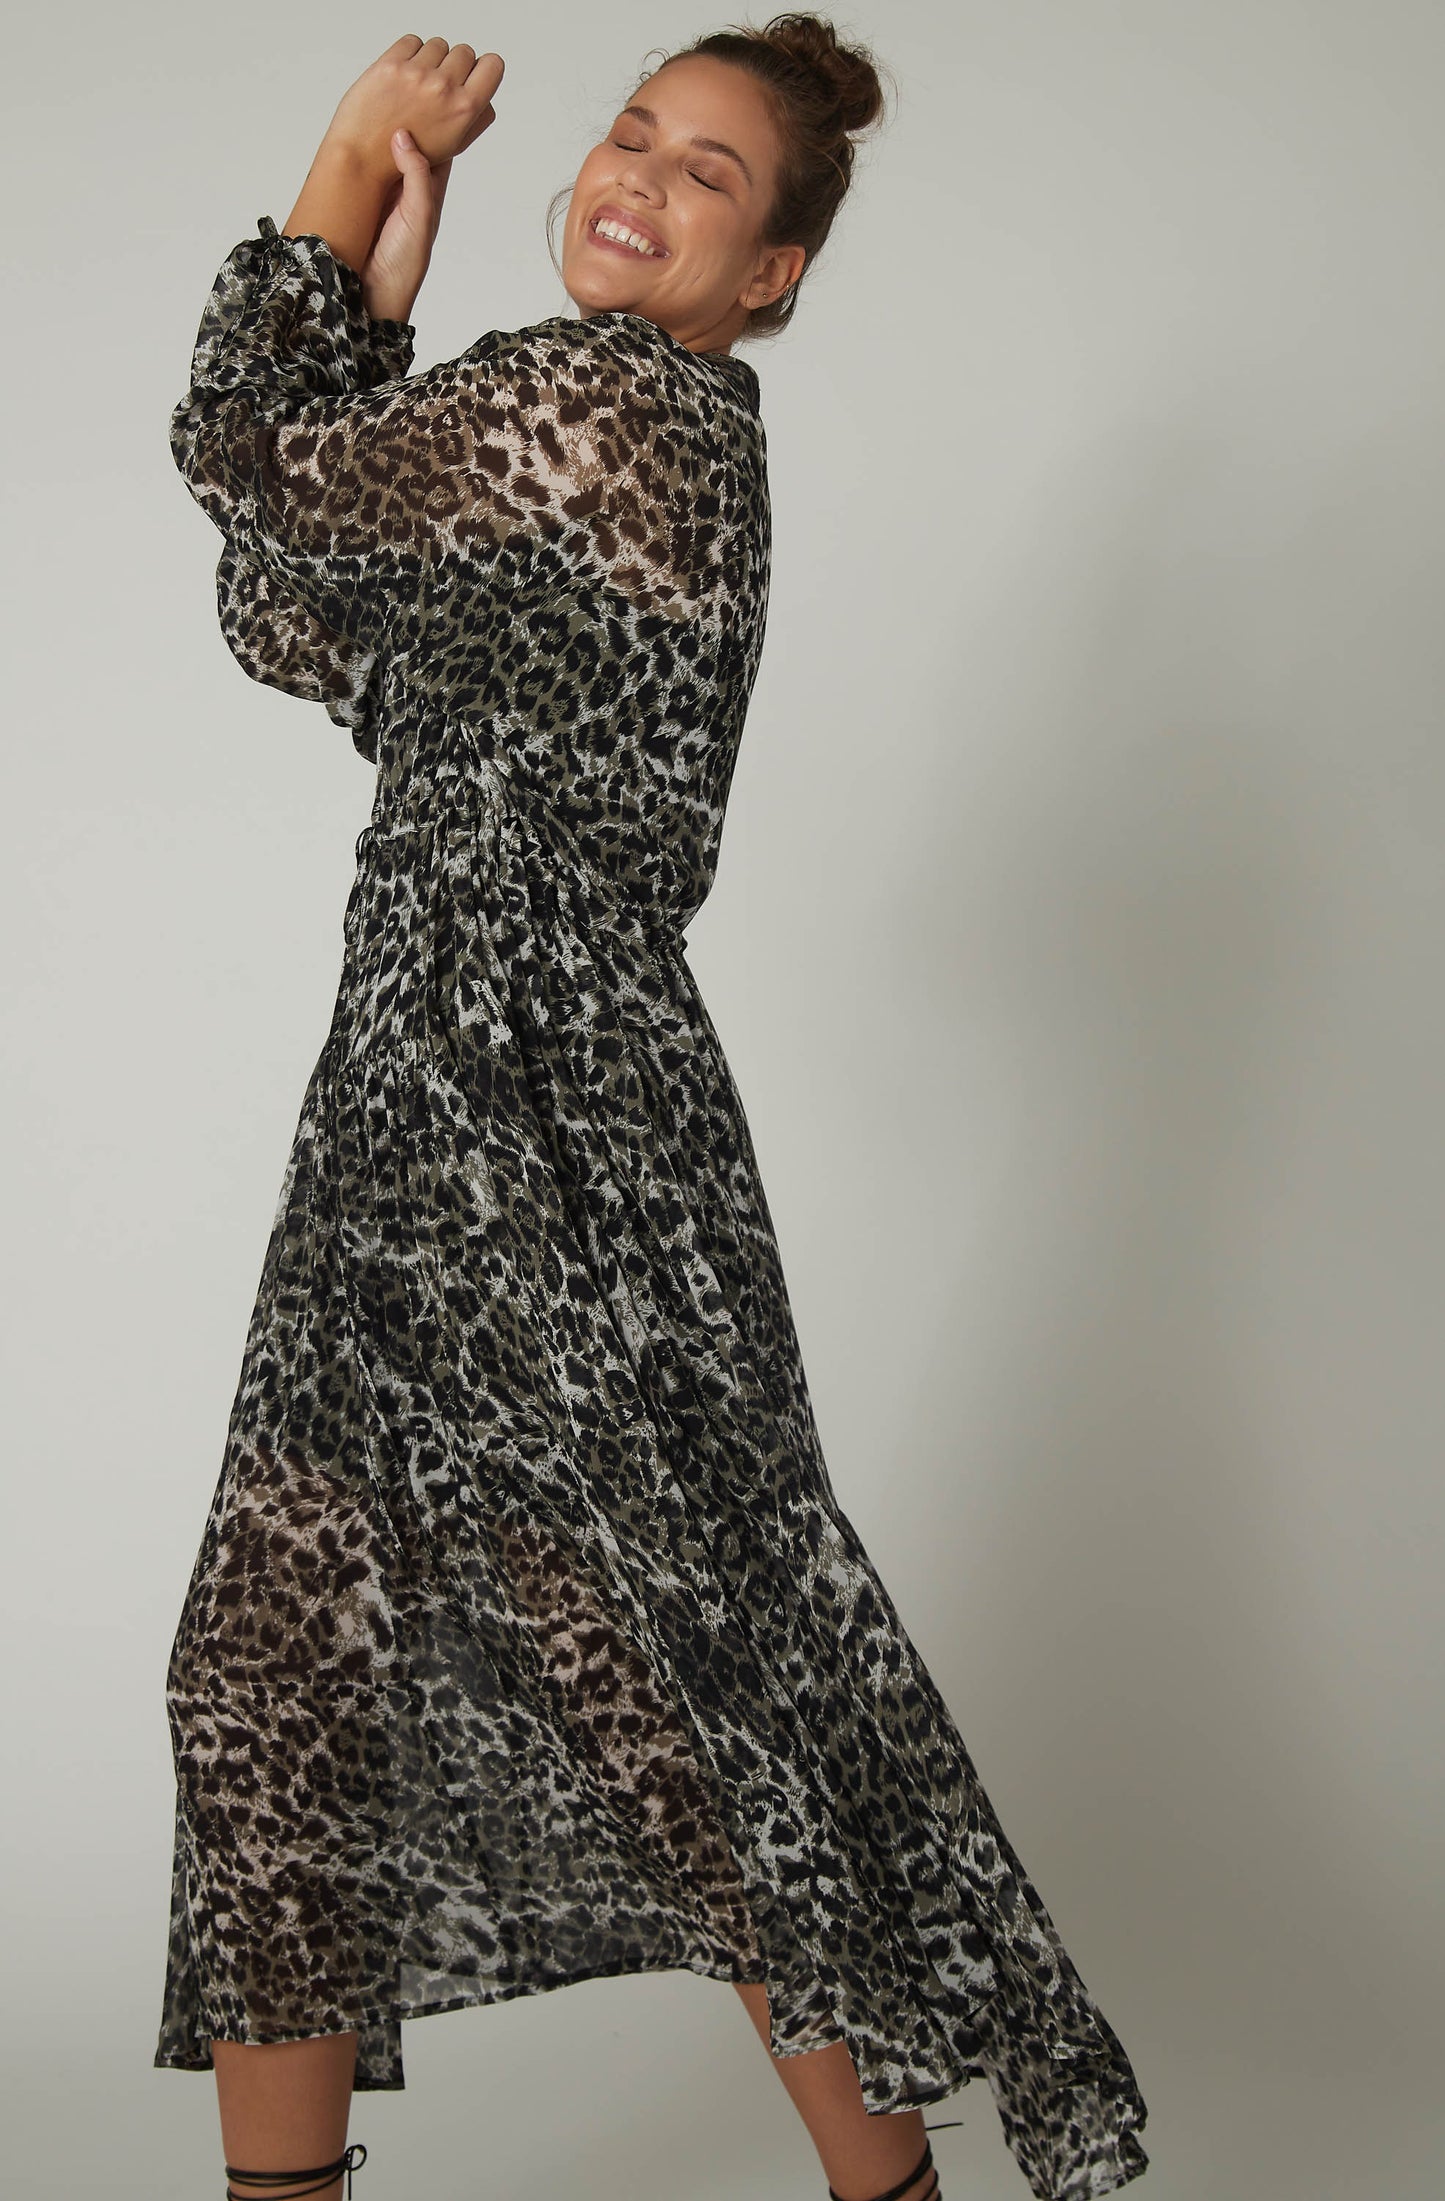 The Masterpiece Leopard Chiffon Dress